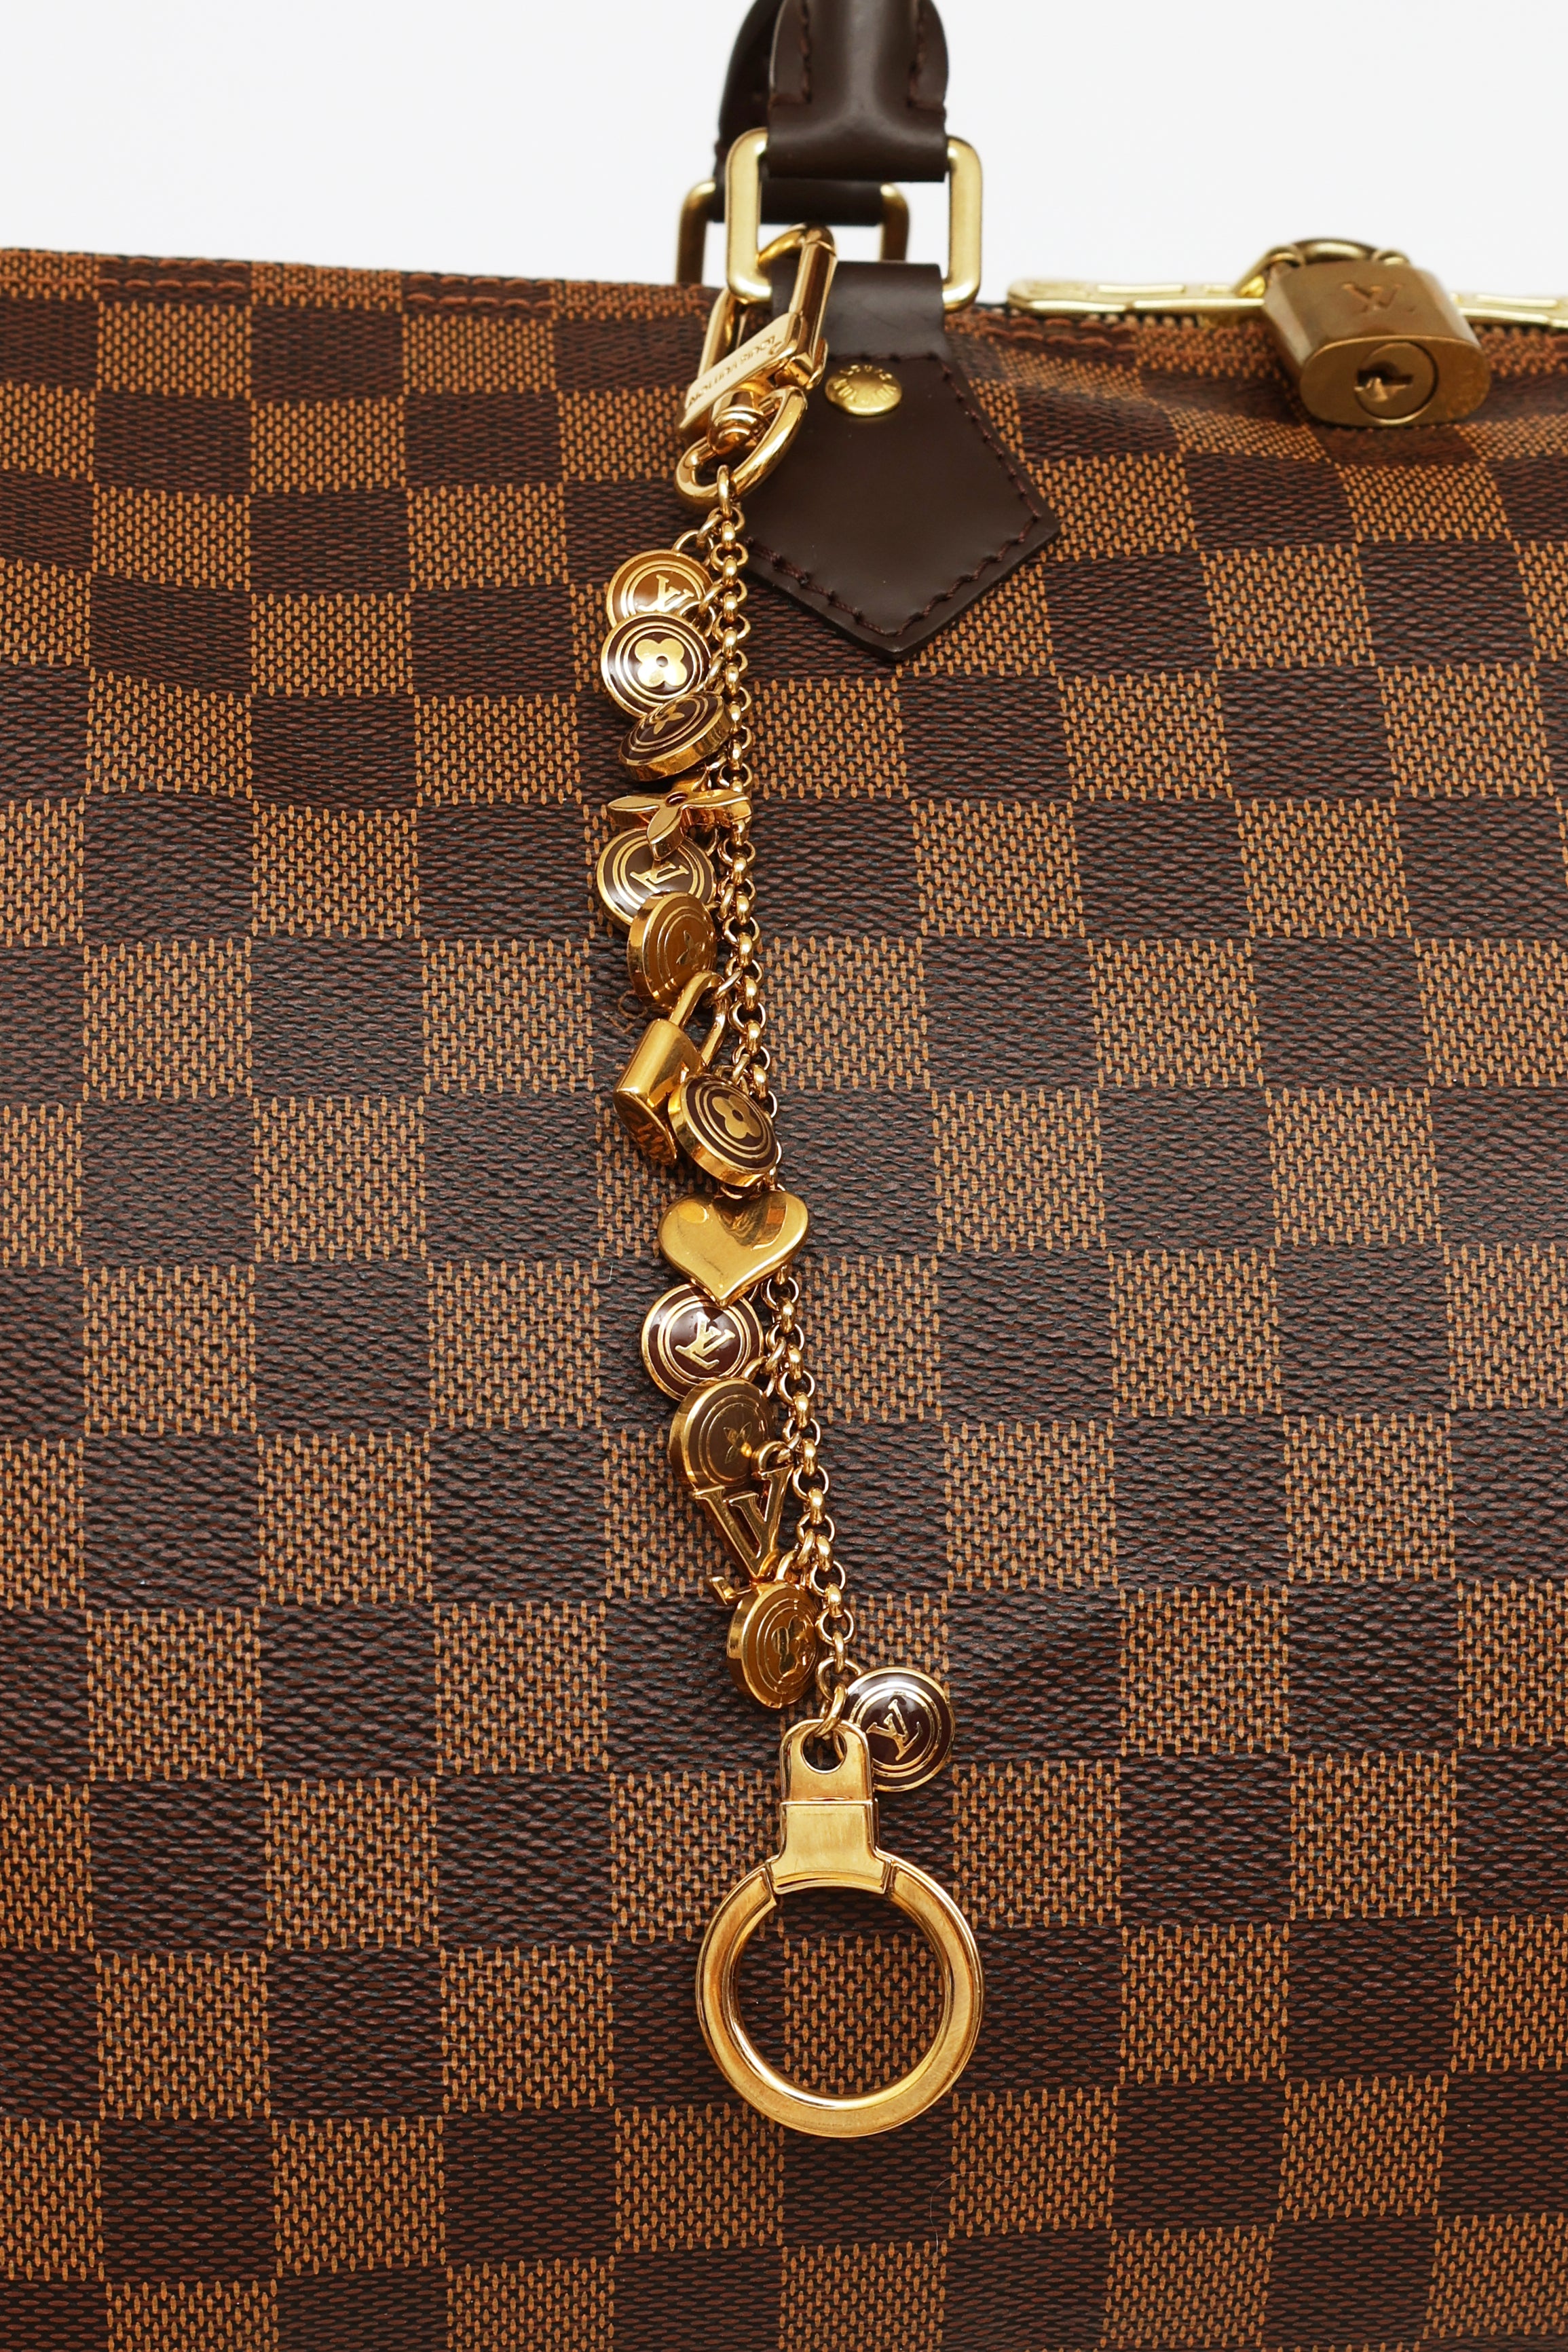 LOUIS VUITTON Pastilles Cles Key Chain Bag Charm 1295403